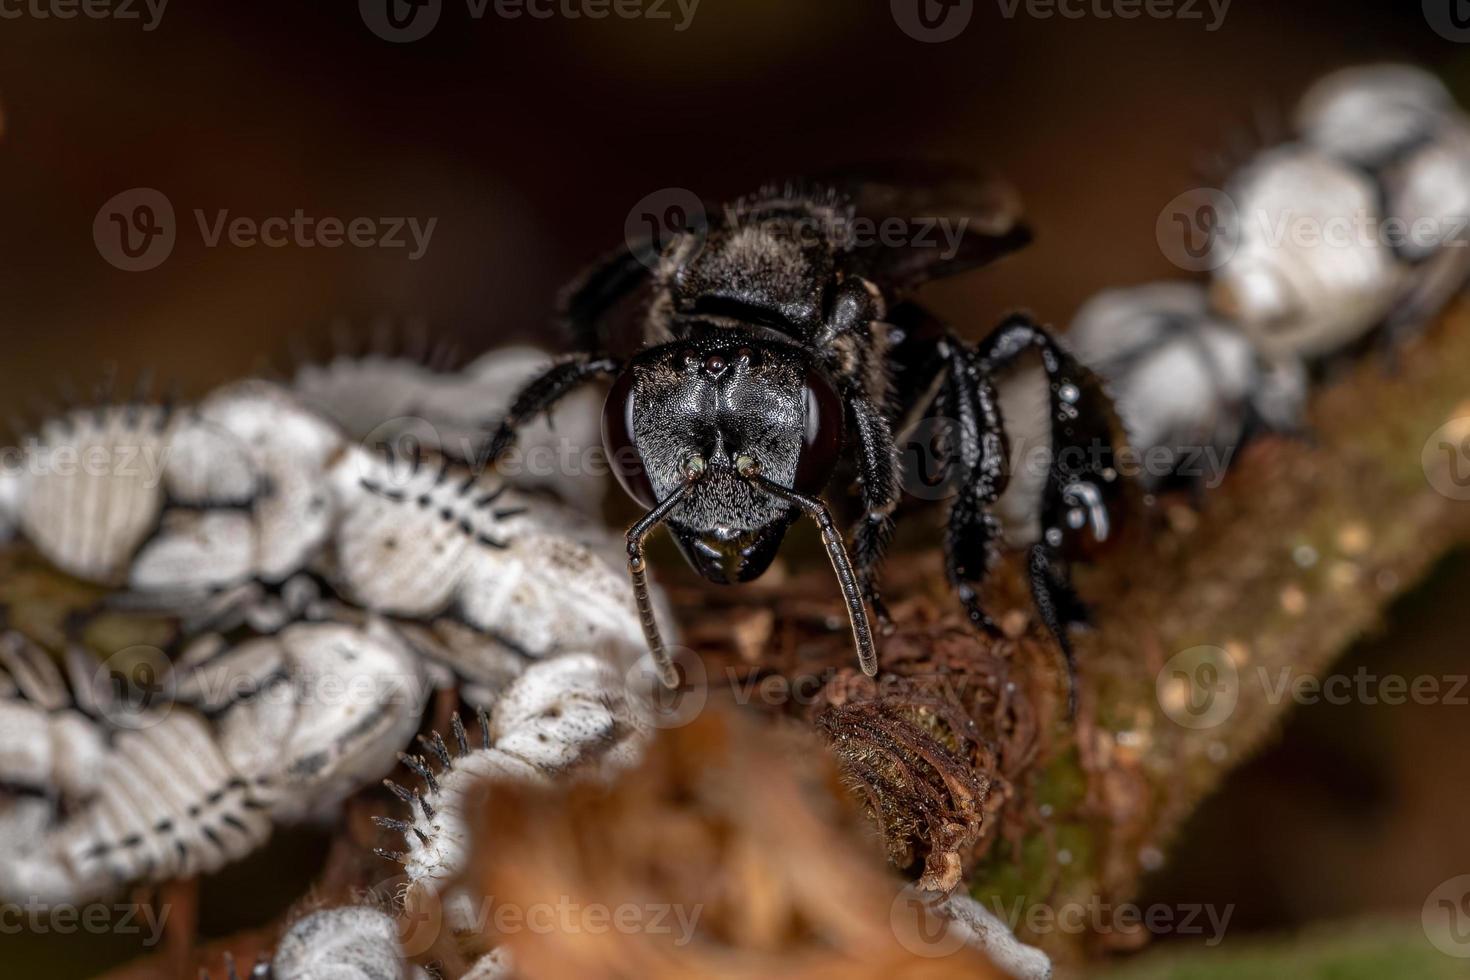 abeille sans dard adulte interagissant avec les nymphes typiques des cicadelles photo